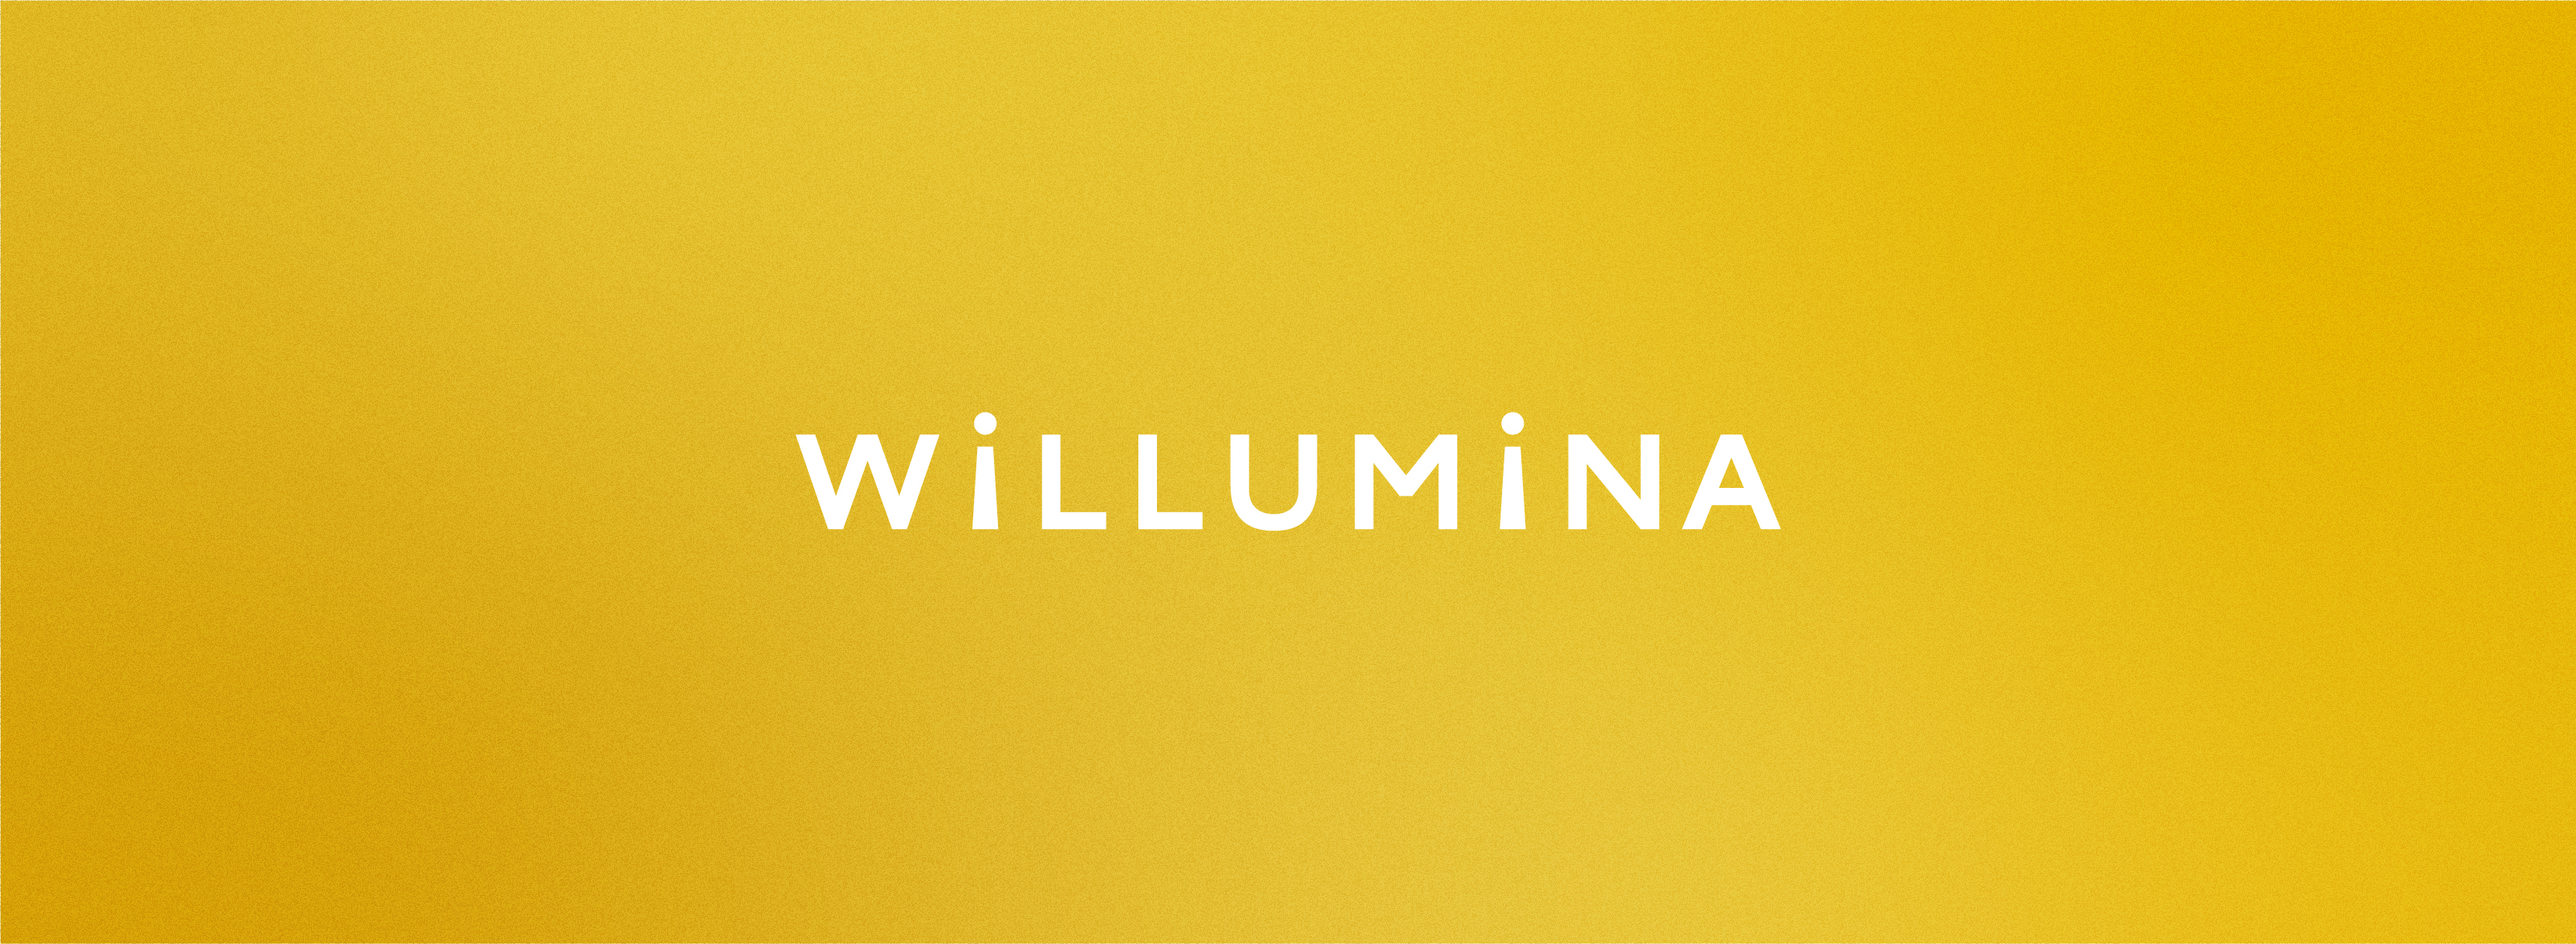 WiLLUMiNAのイメージバナー